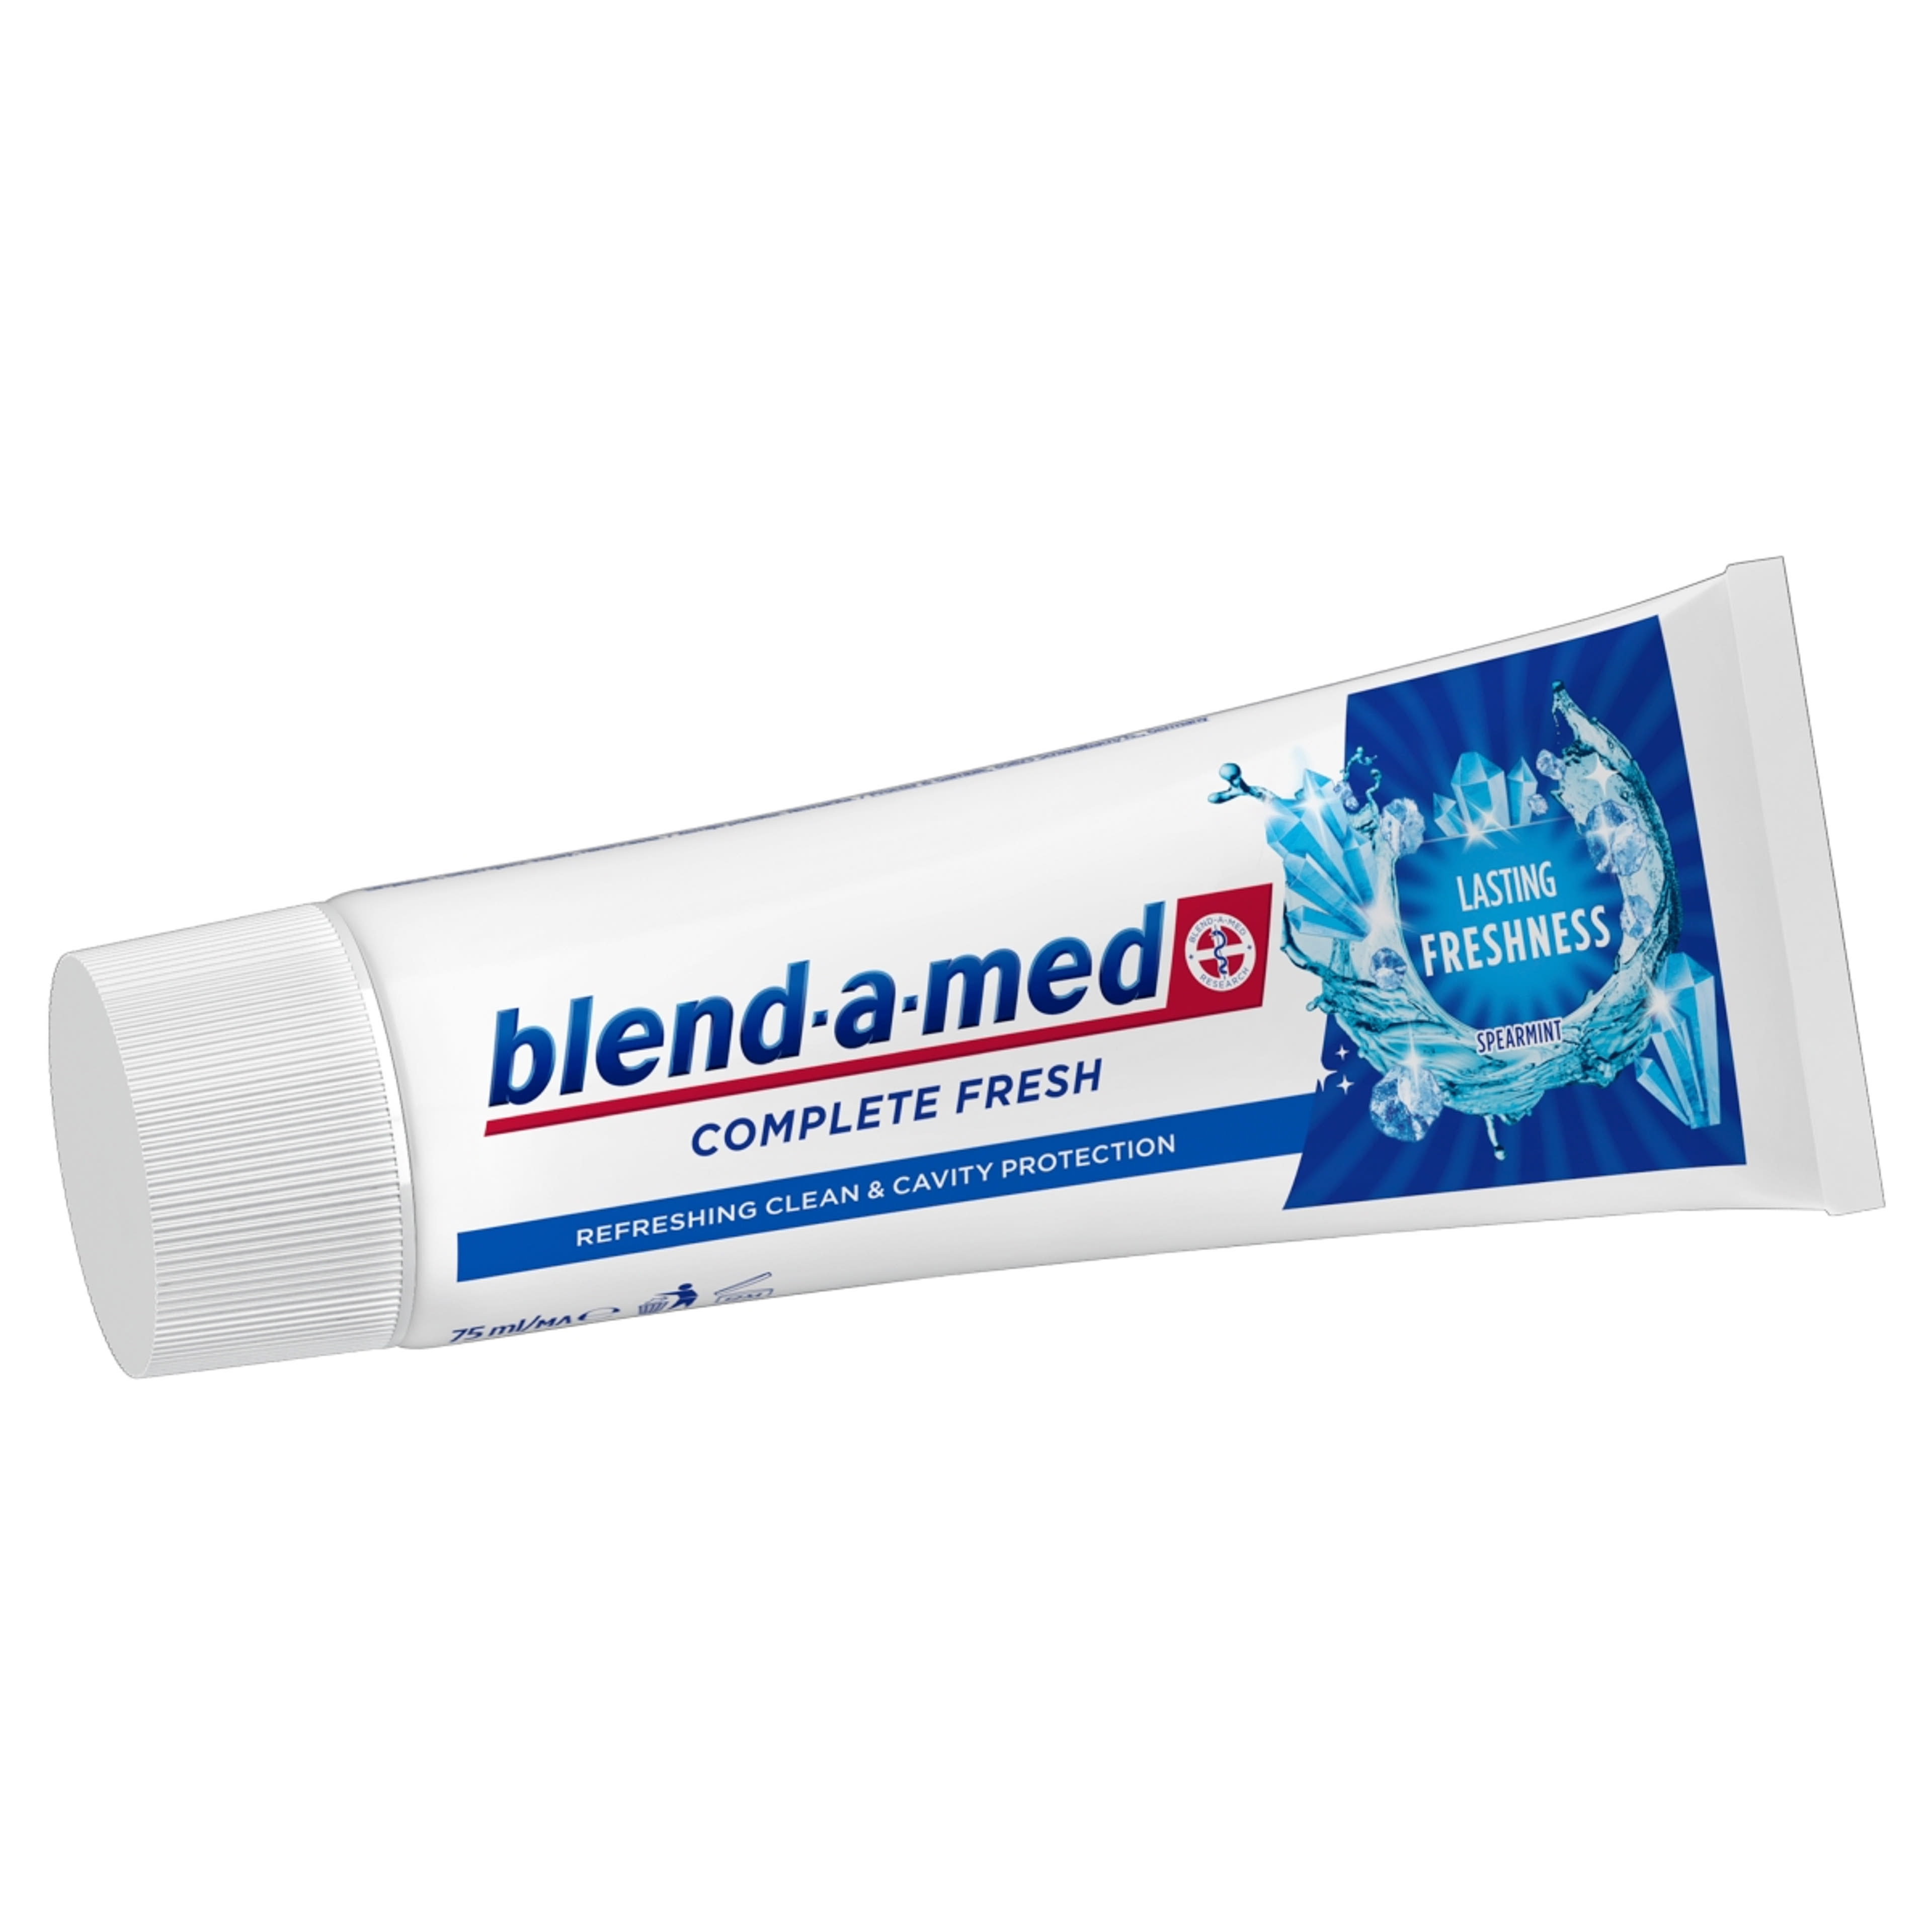 Blend-a-med Complete Fresh Lasting Freshness fogkrém - 75 ml-3